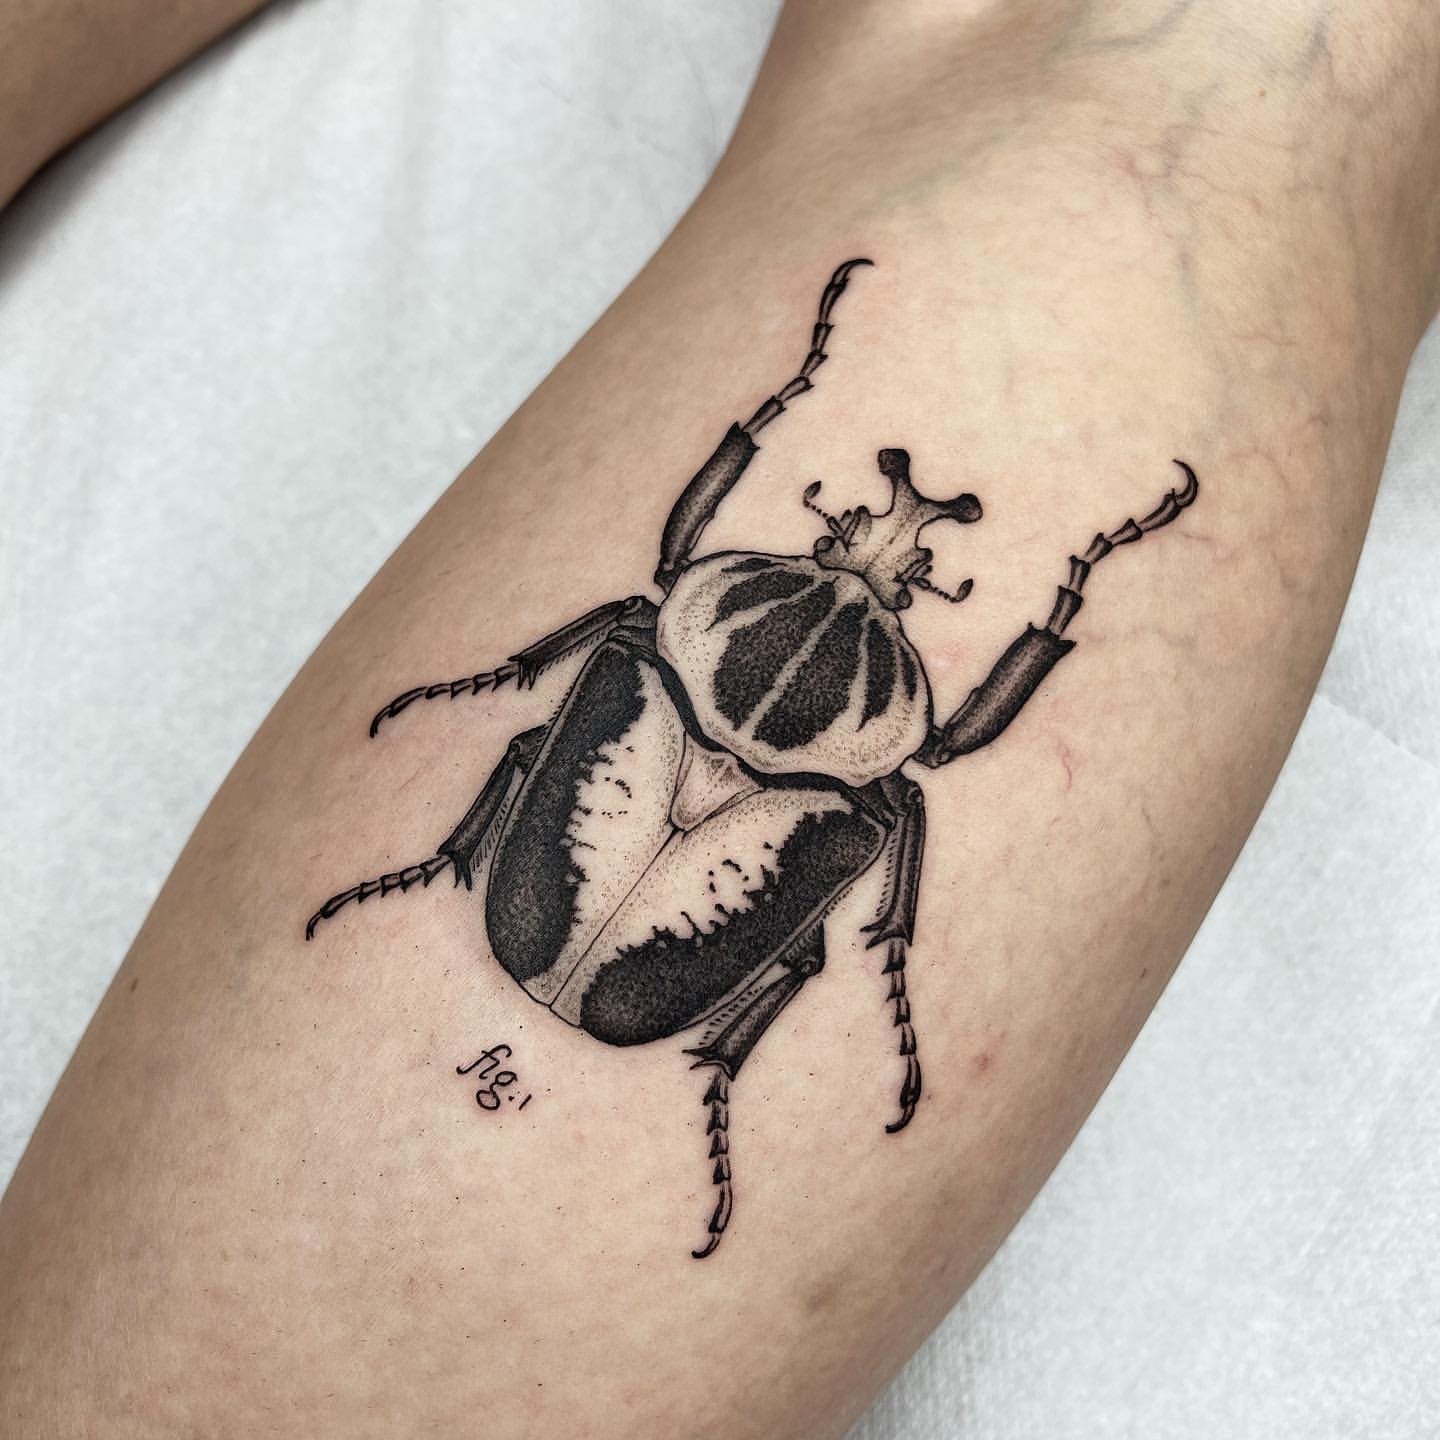 Beetle tattoo ideas